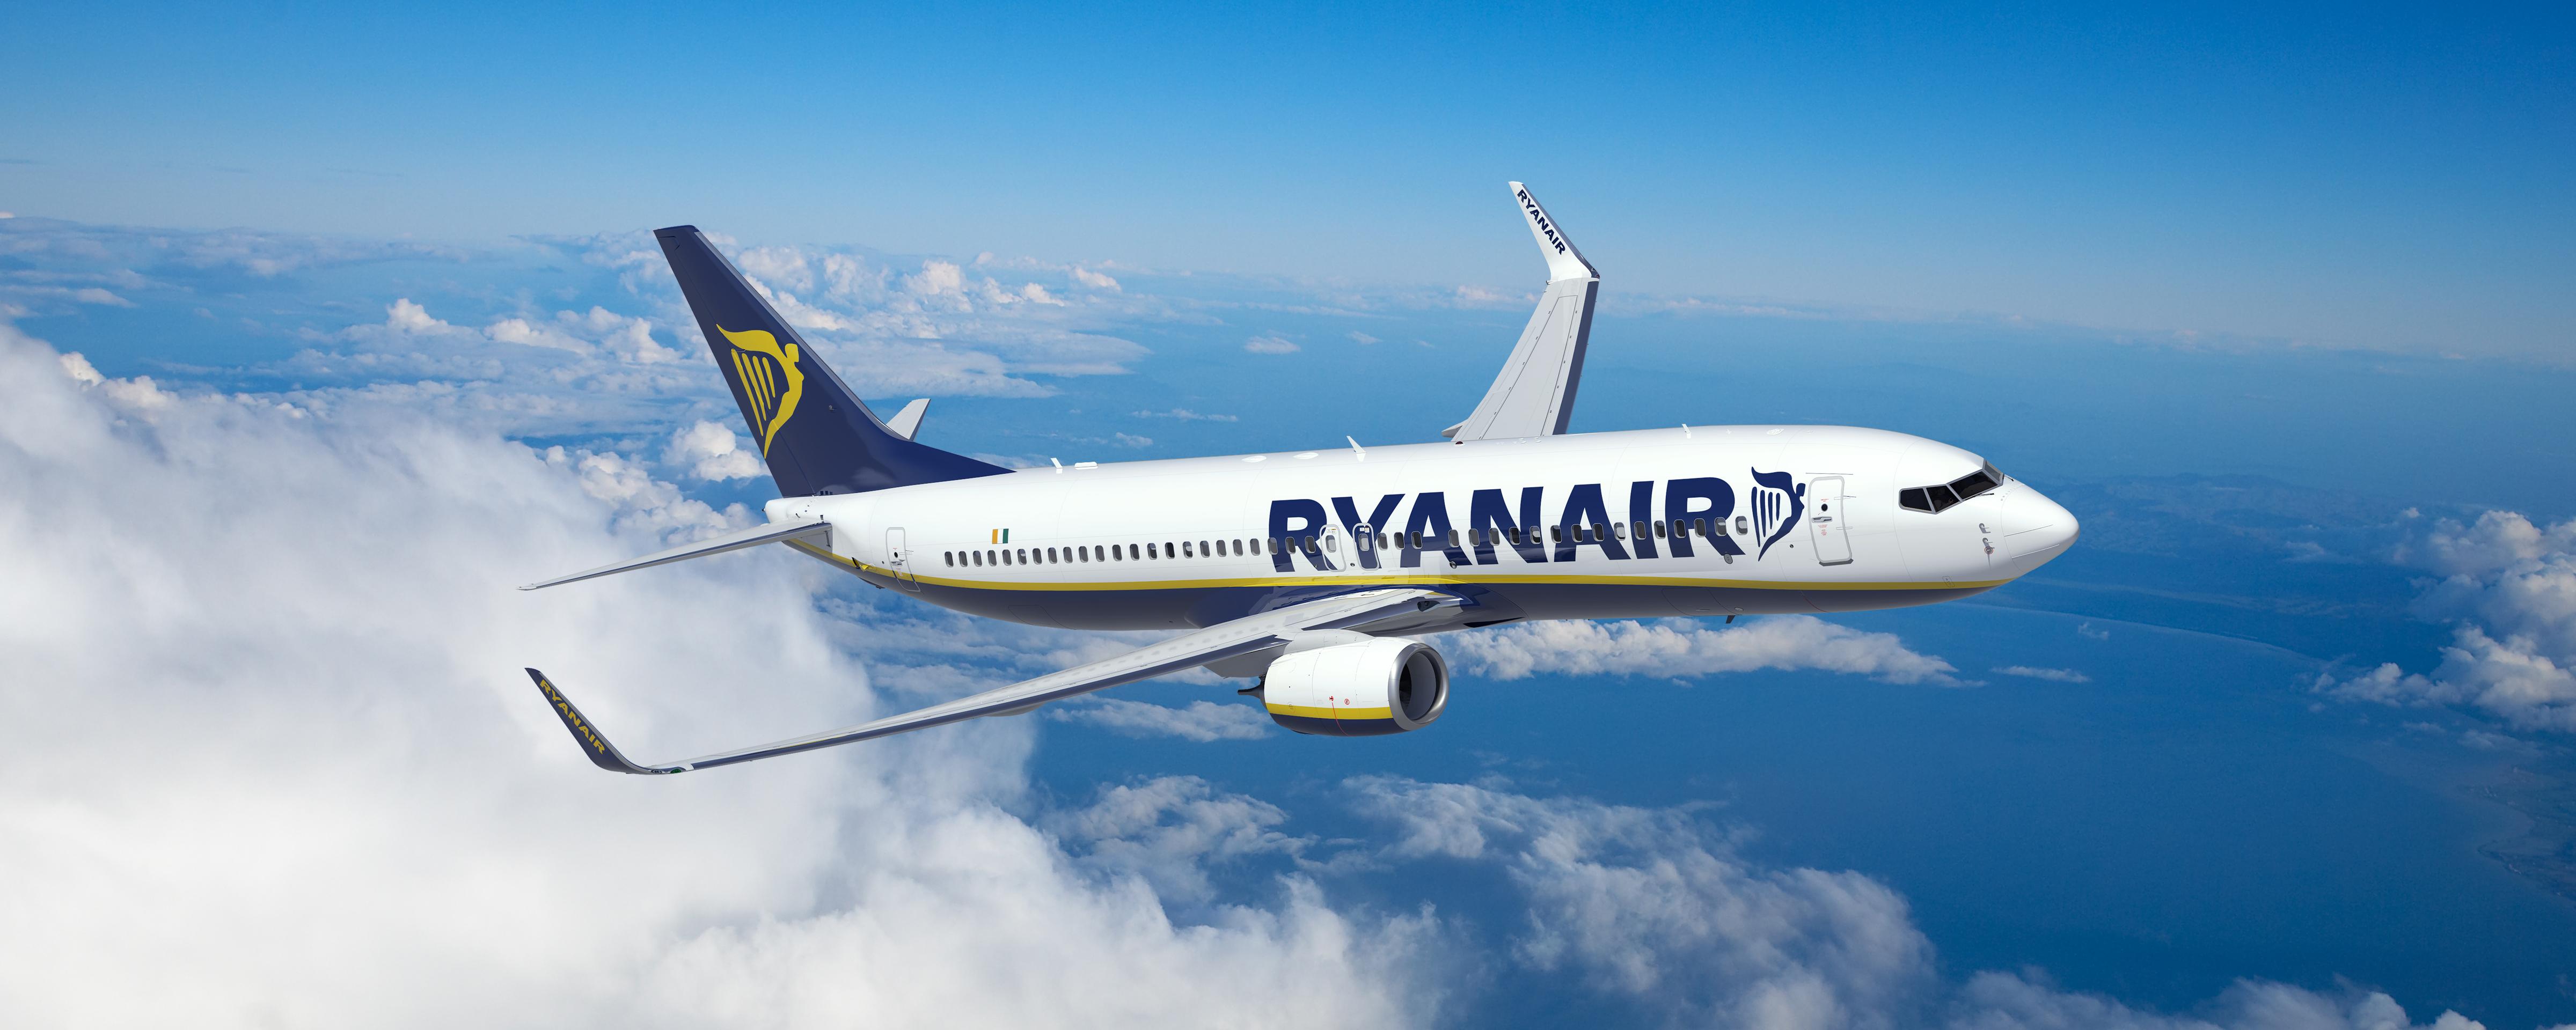 Ryanair: Τέλος στη δωρεάν χειραποσκευή